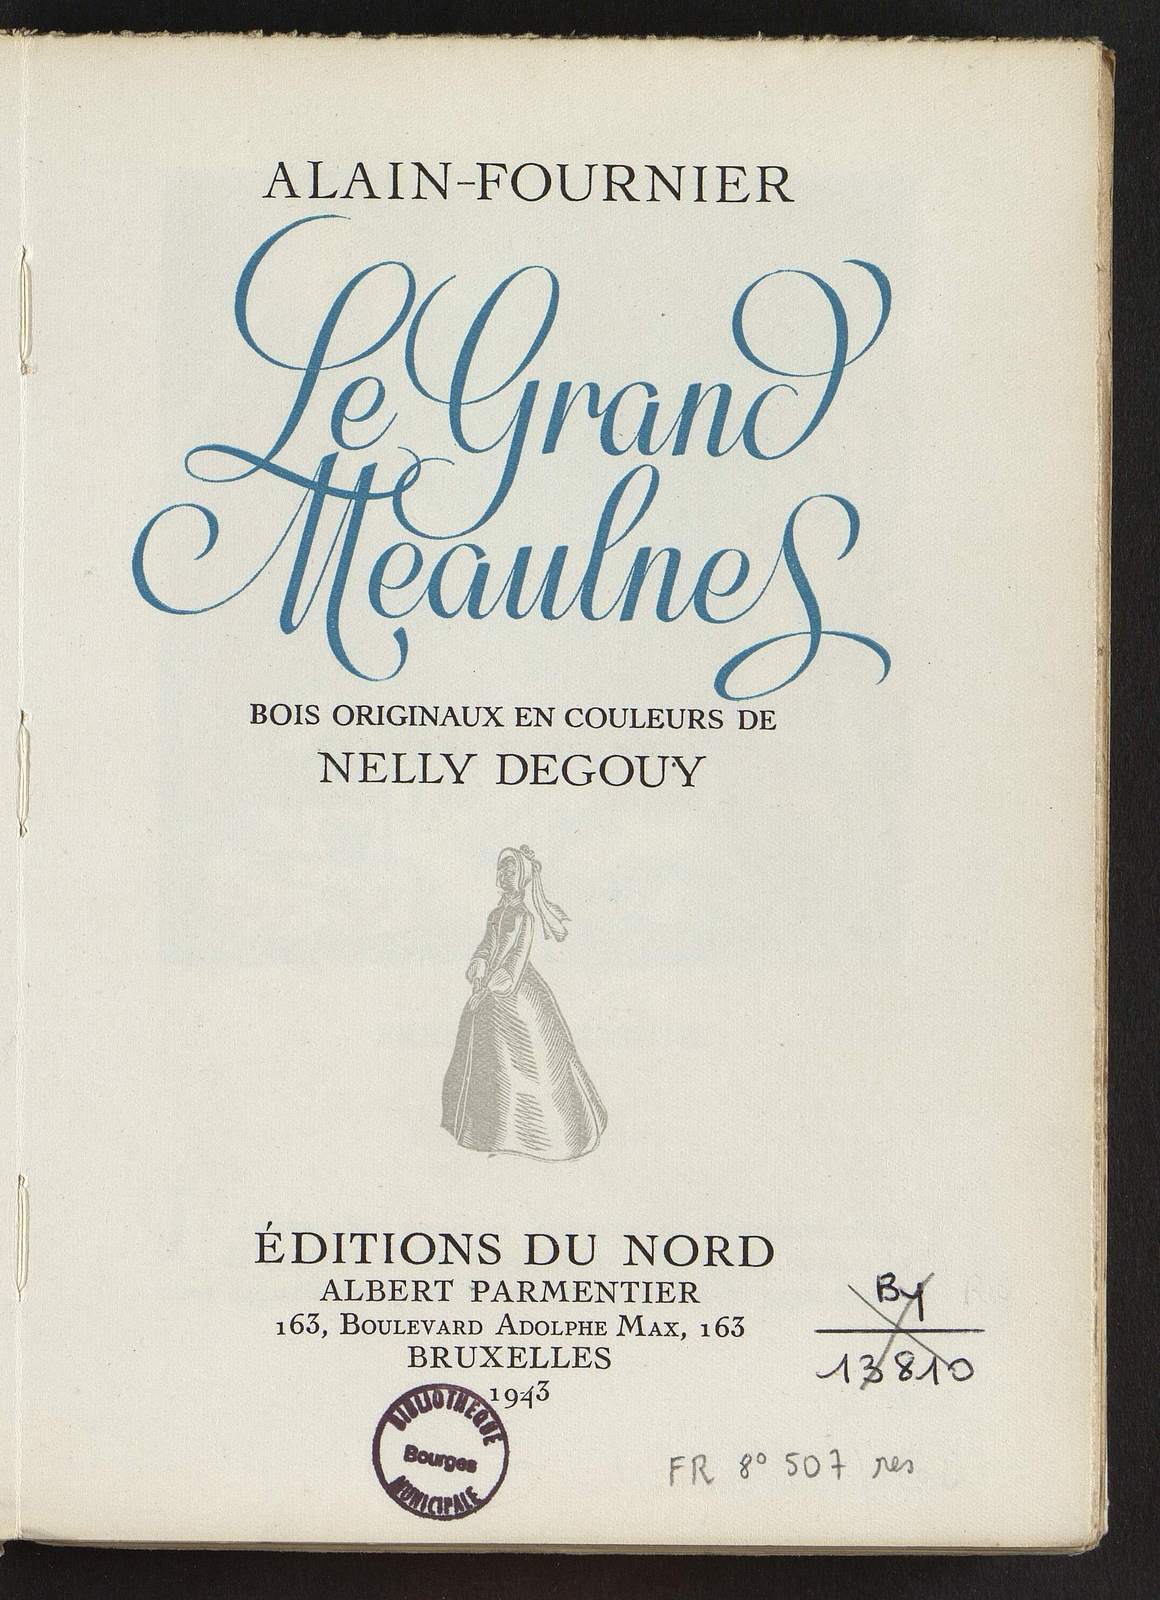 Le Grand Meaulnes, Une apparition, illustré par Nelly Degouy, Editions du Nord, 1943